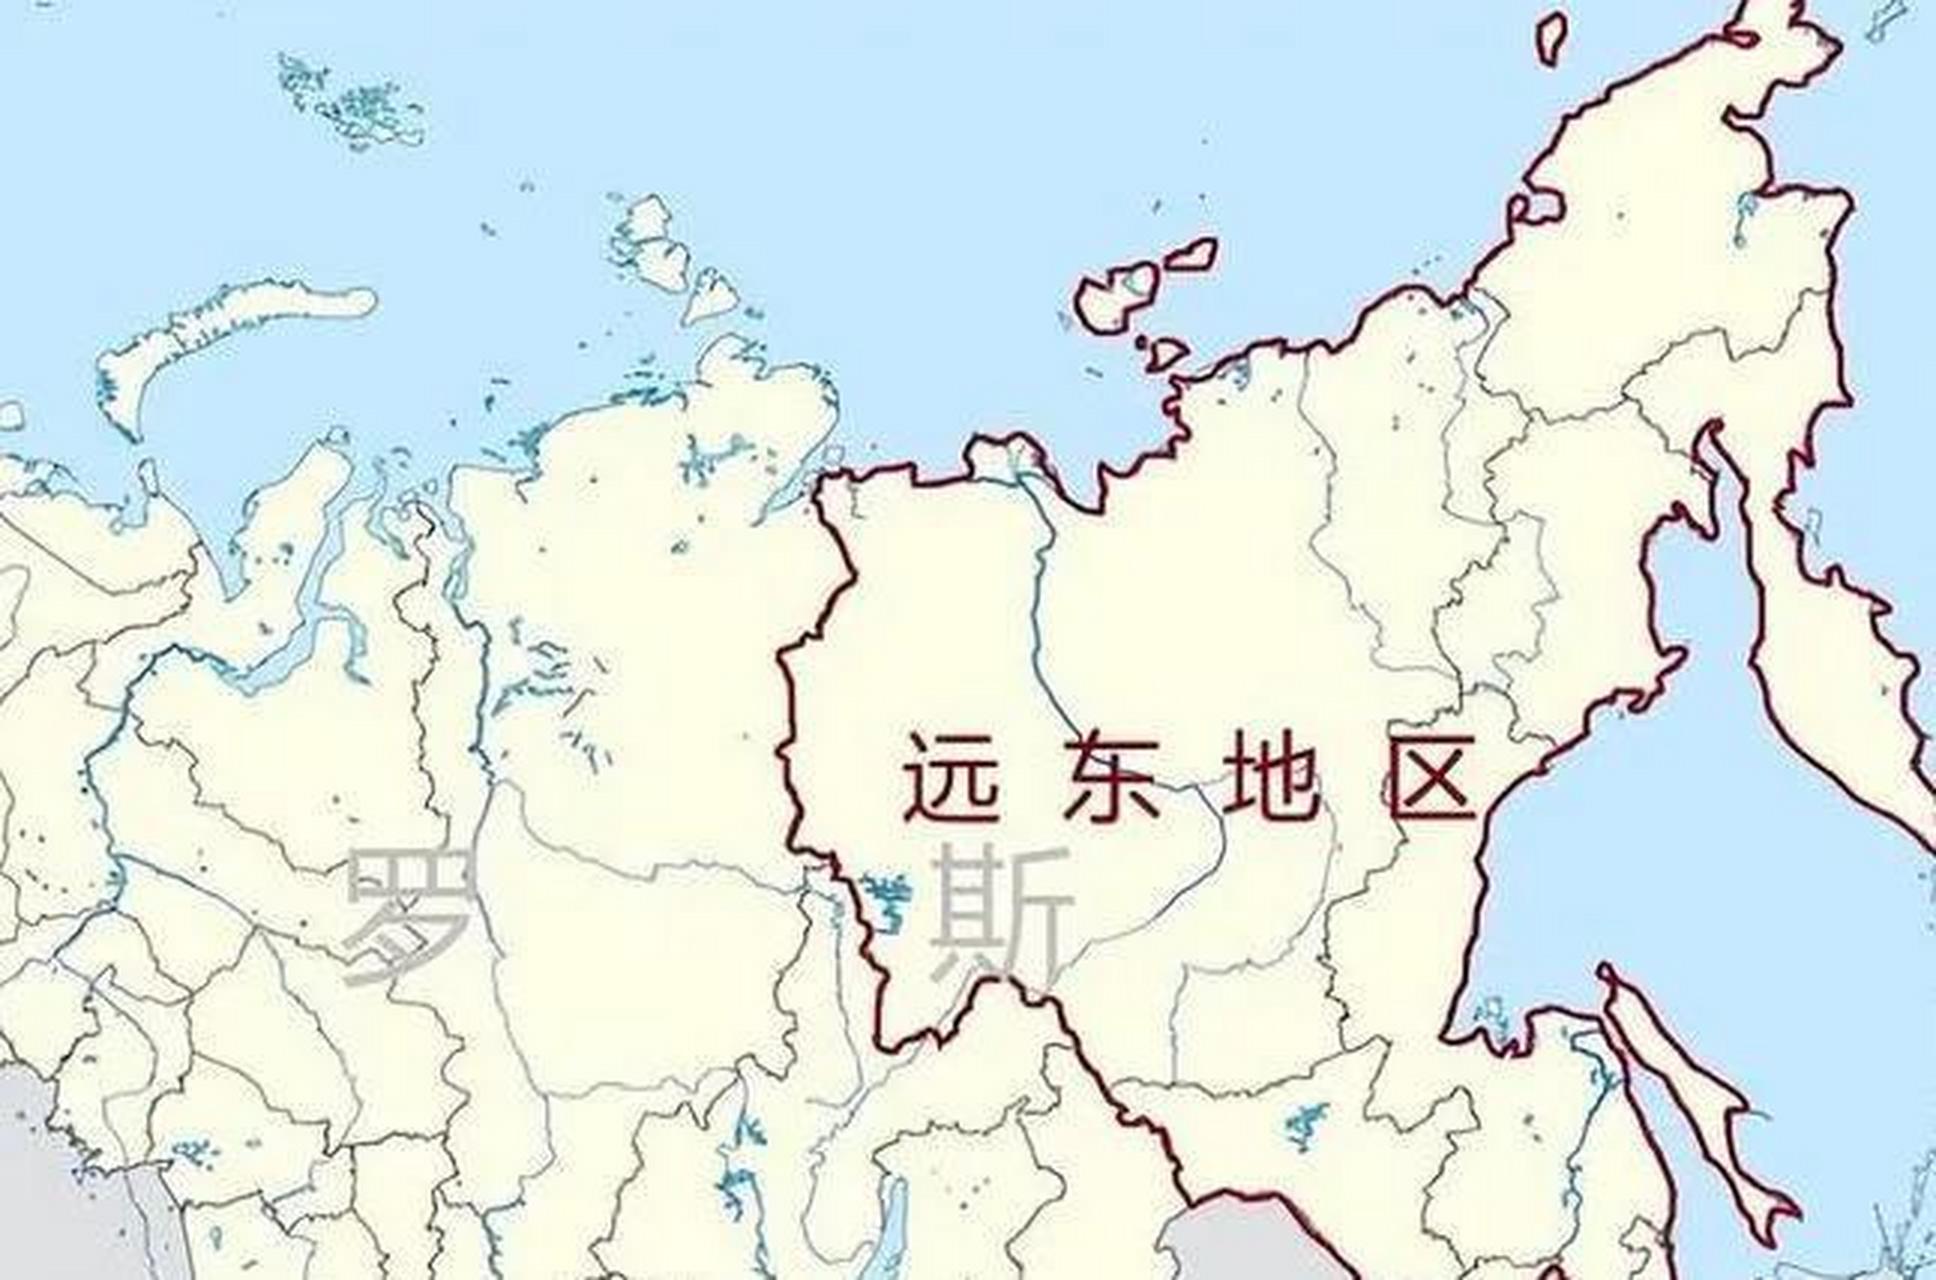 中俄合作开发远东地区,为中国东北的经济发展提供了新的发展机遇!